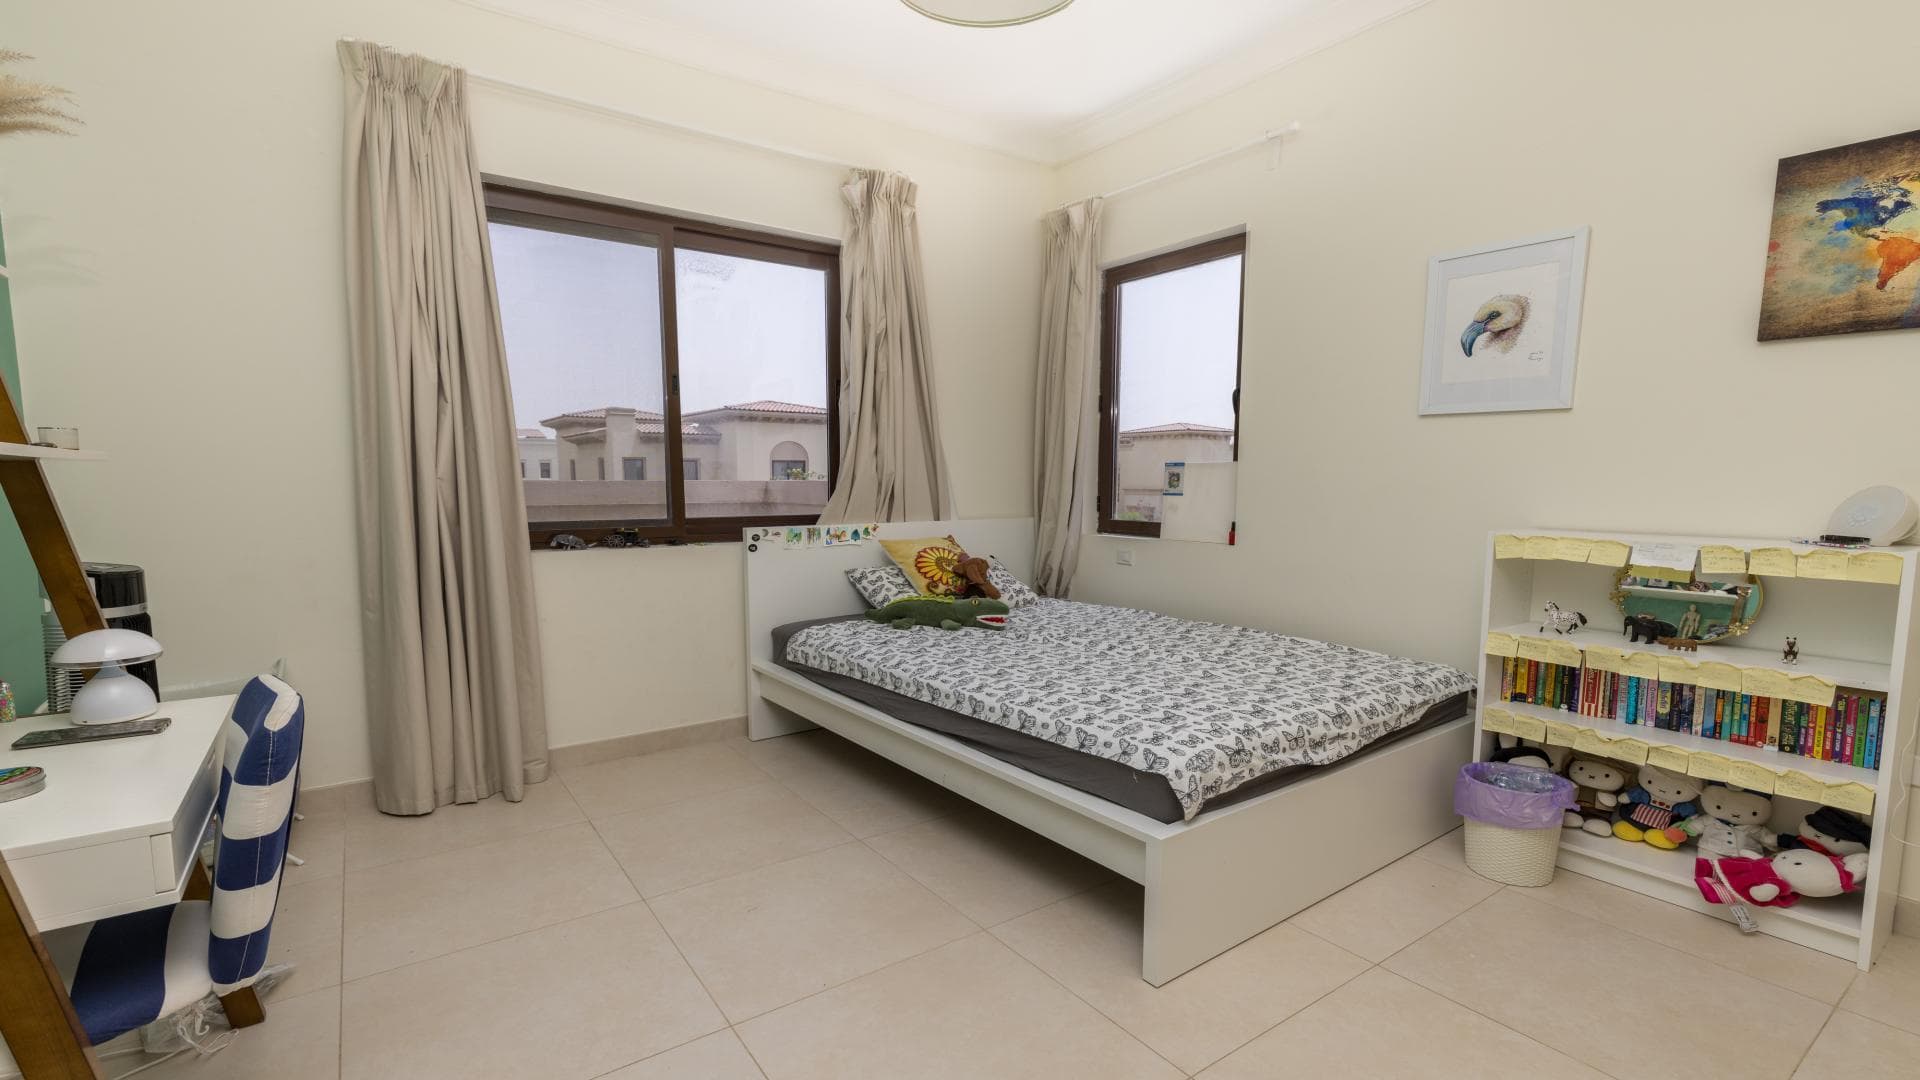 5 Bedroom Villa For Rent Palma Lp14457 E5162a0a8ea7980.jpg